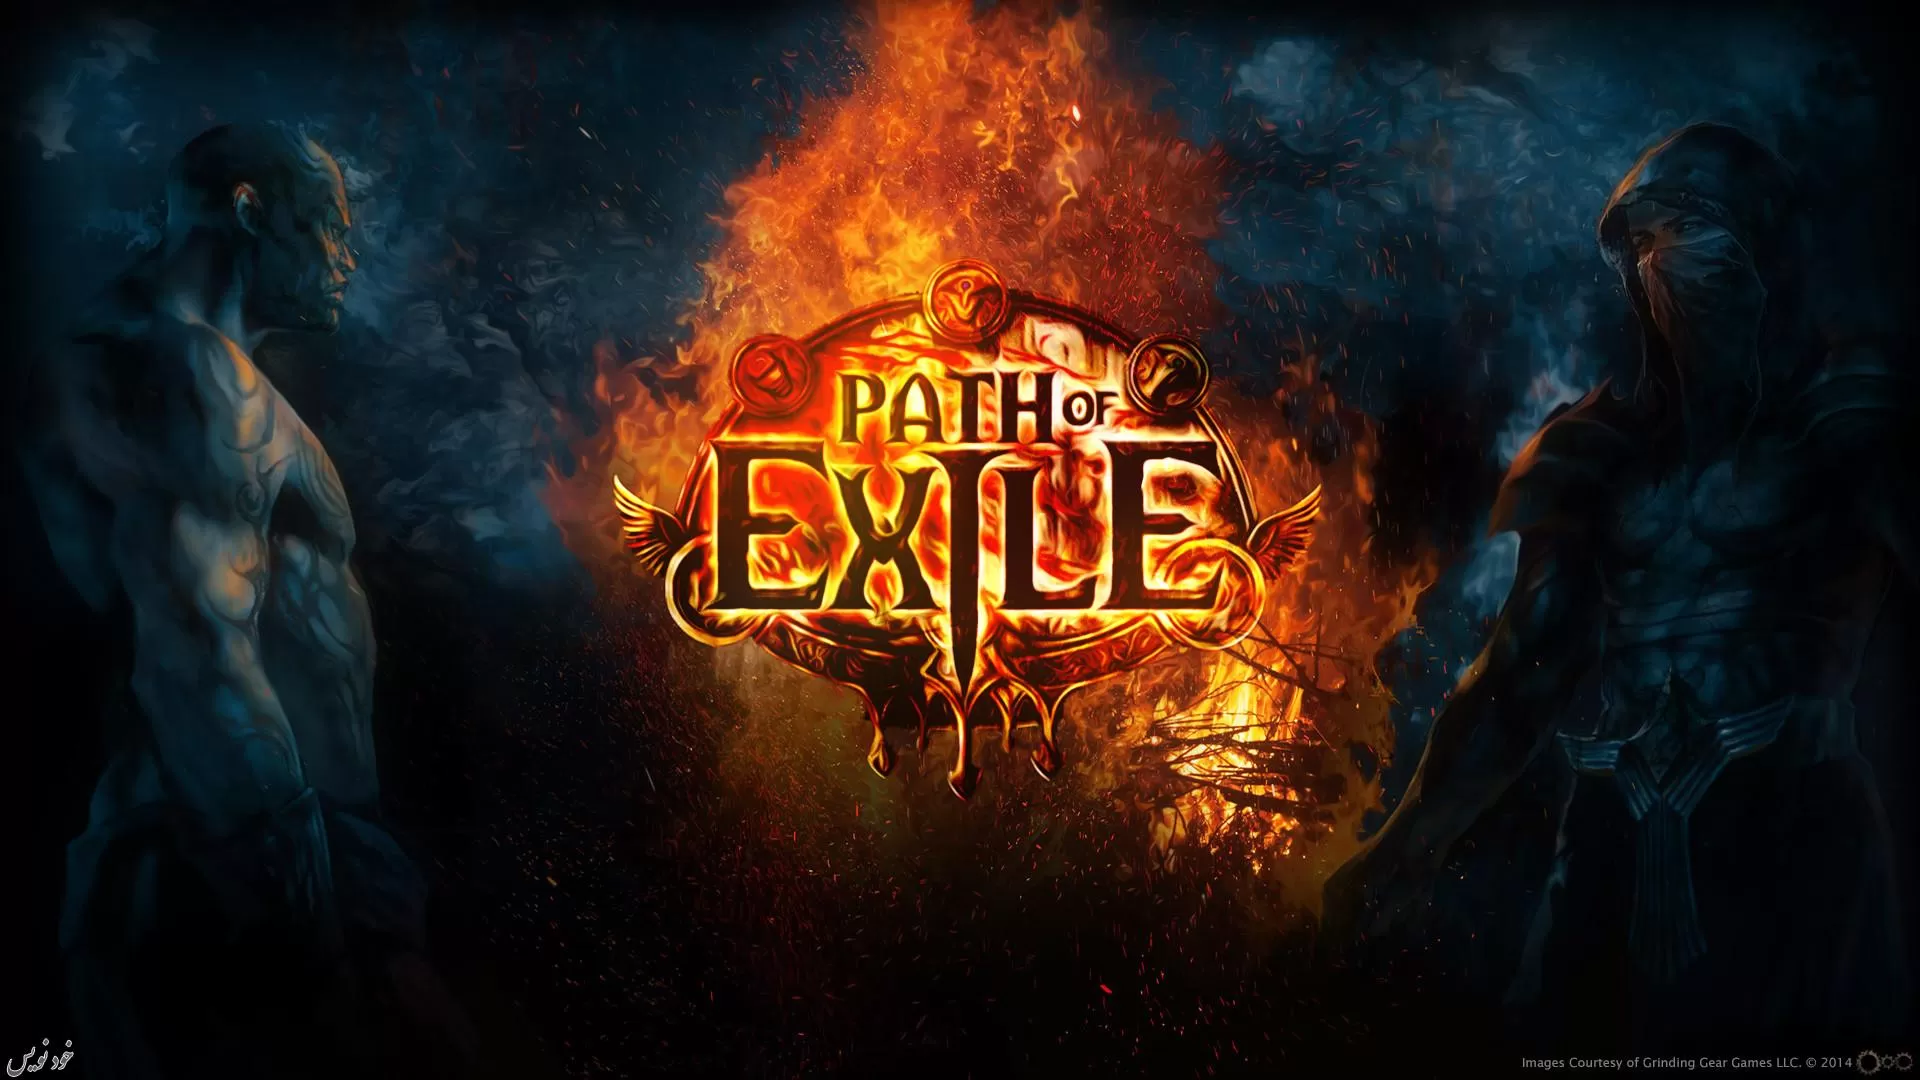 افزونه ی جدید Path of Exile با نام Lake of Kalandra عرضه میشود| معرفی کامل در تاریخ ۱۱ آگست